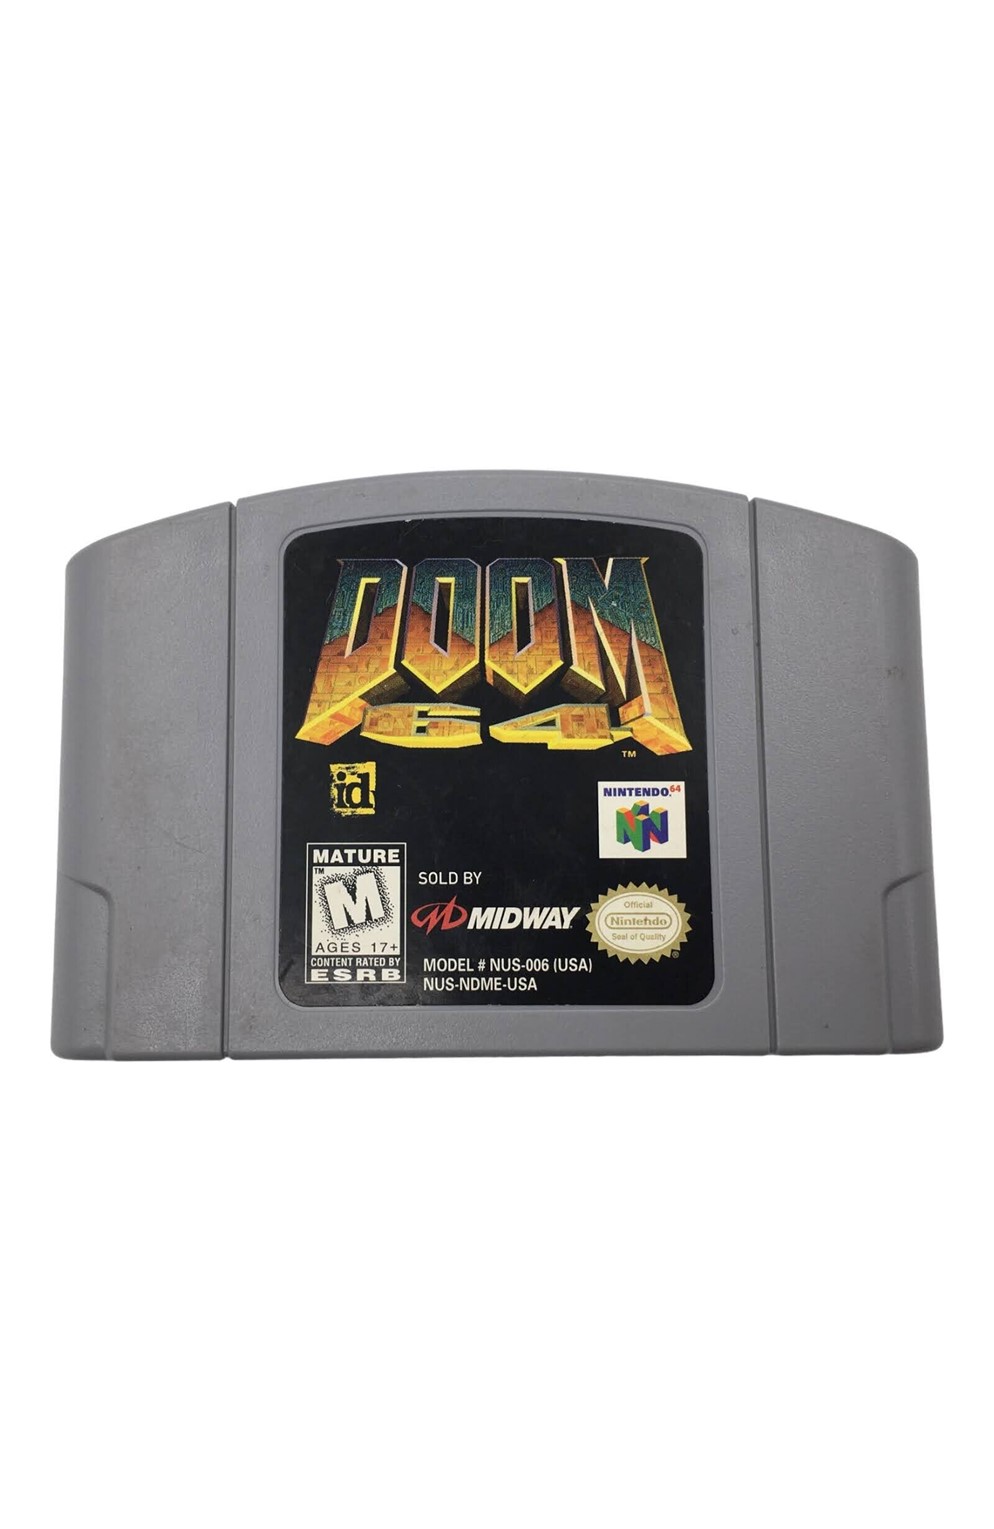  Nintendo N64 Doom 64 Pre-Owned